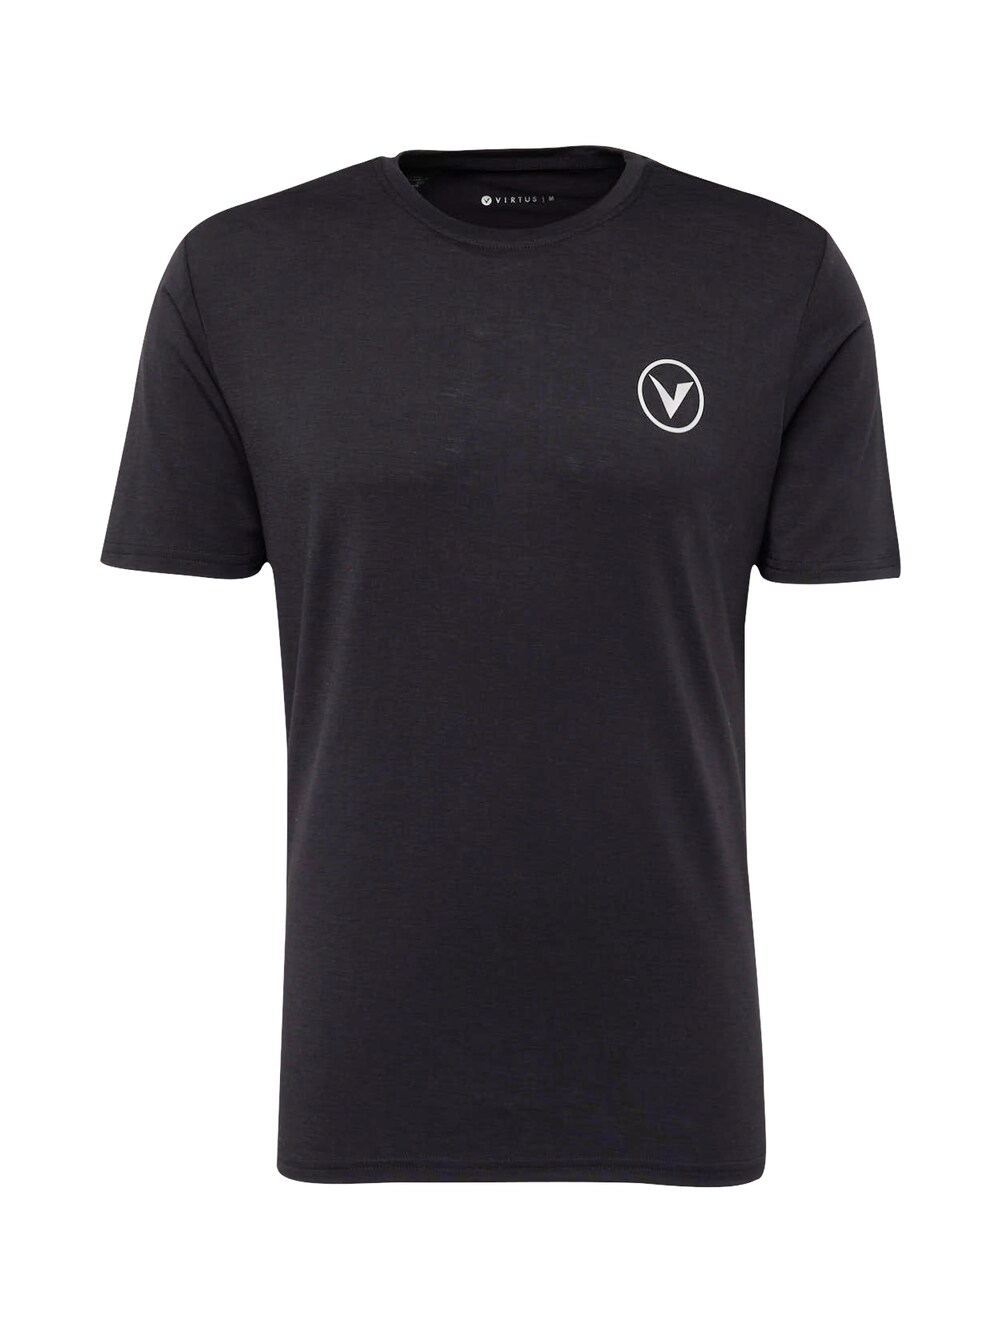 Футболка для выступлений Virtus Joker, пестрый черный футболка для выступлений virtus joker апельсин